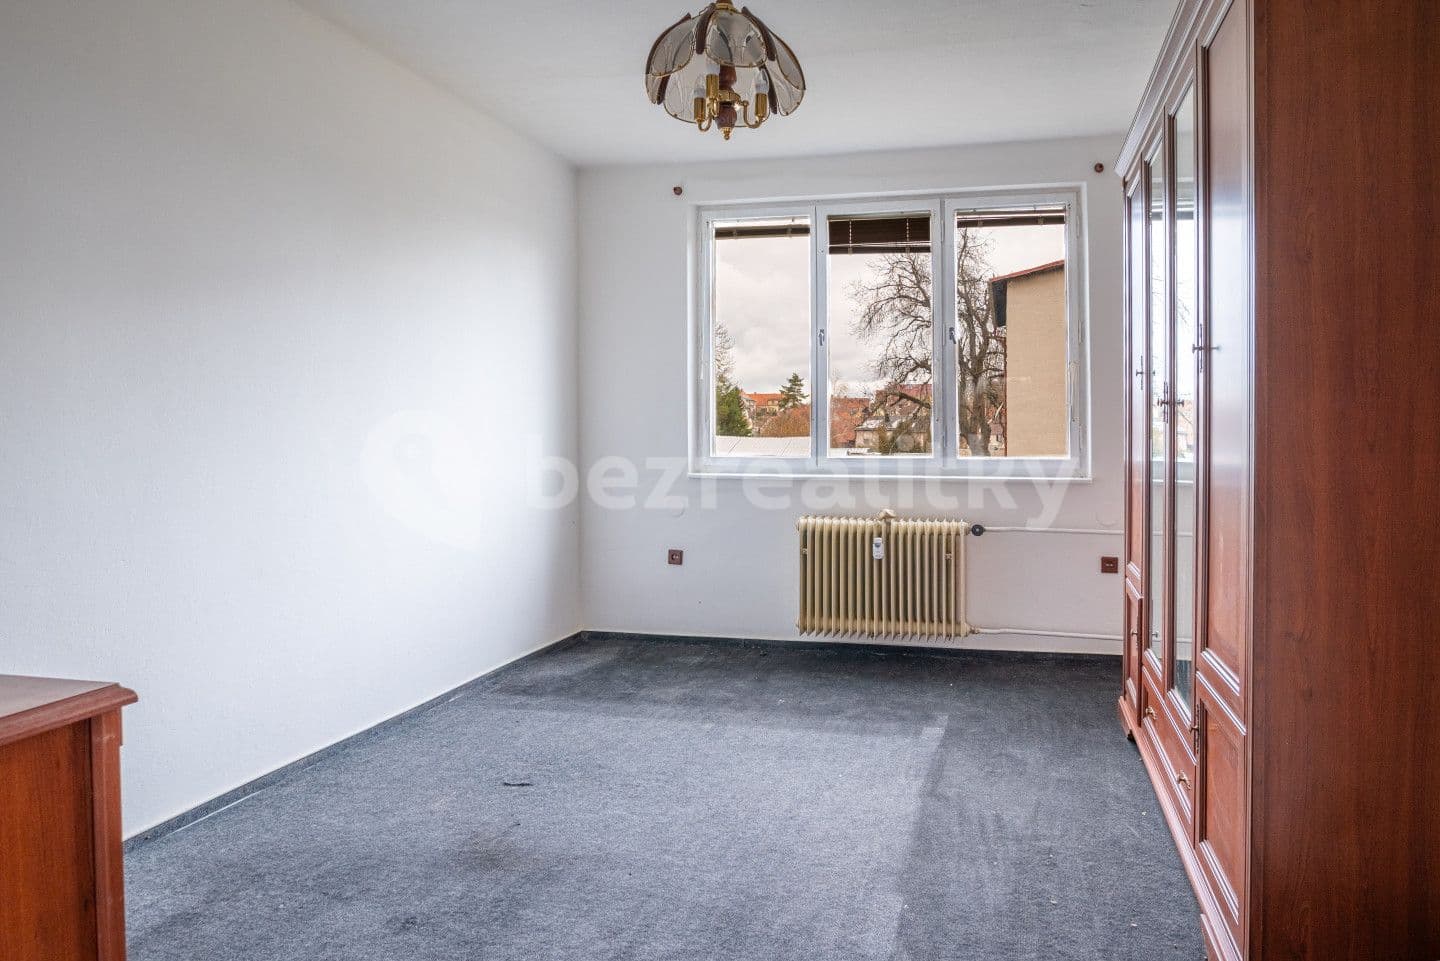 2 bedroom flat for sale, 53 m², Osek, Jihočeský Region